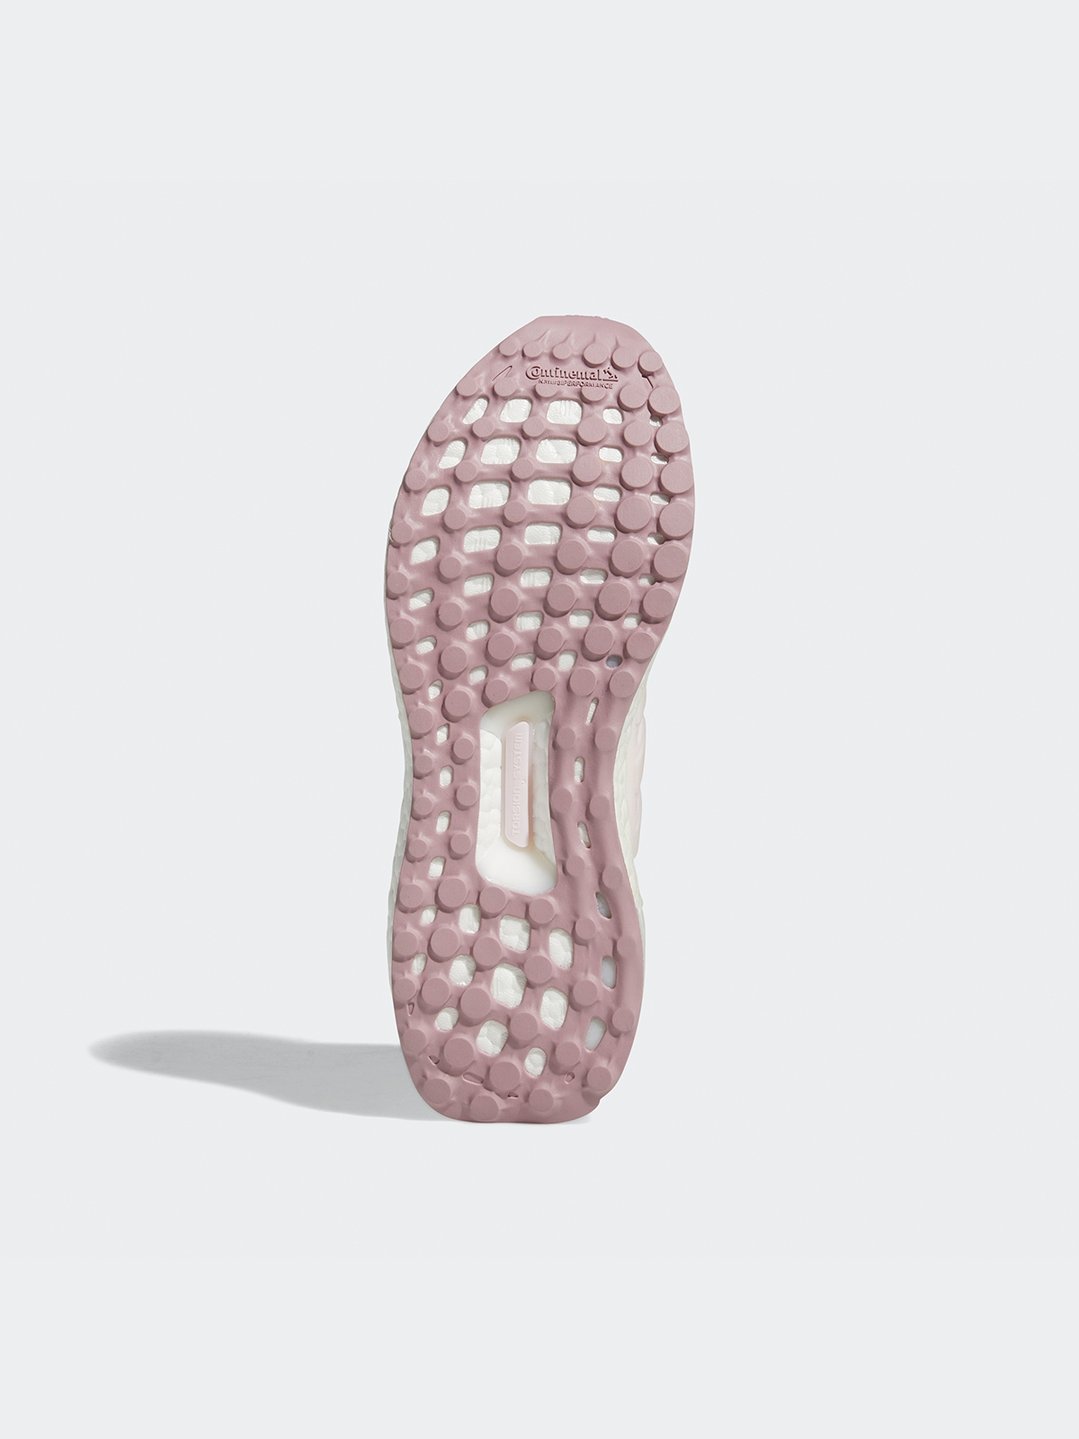 adidas Yoga Studio 7/8 Leggings - Pink